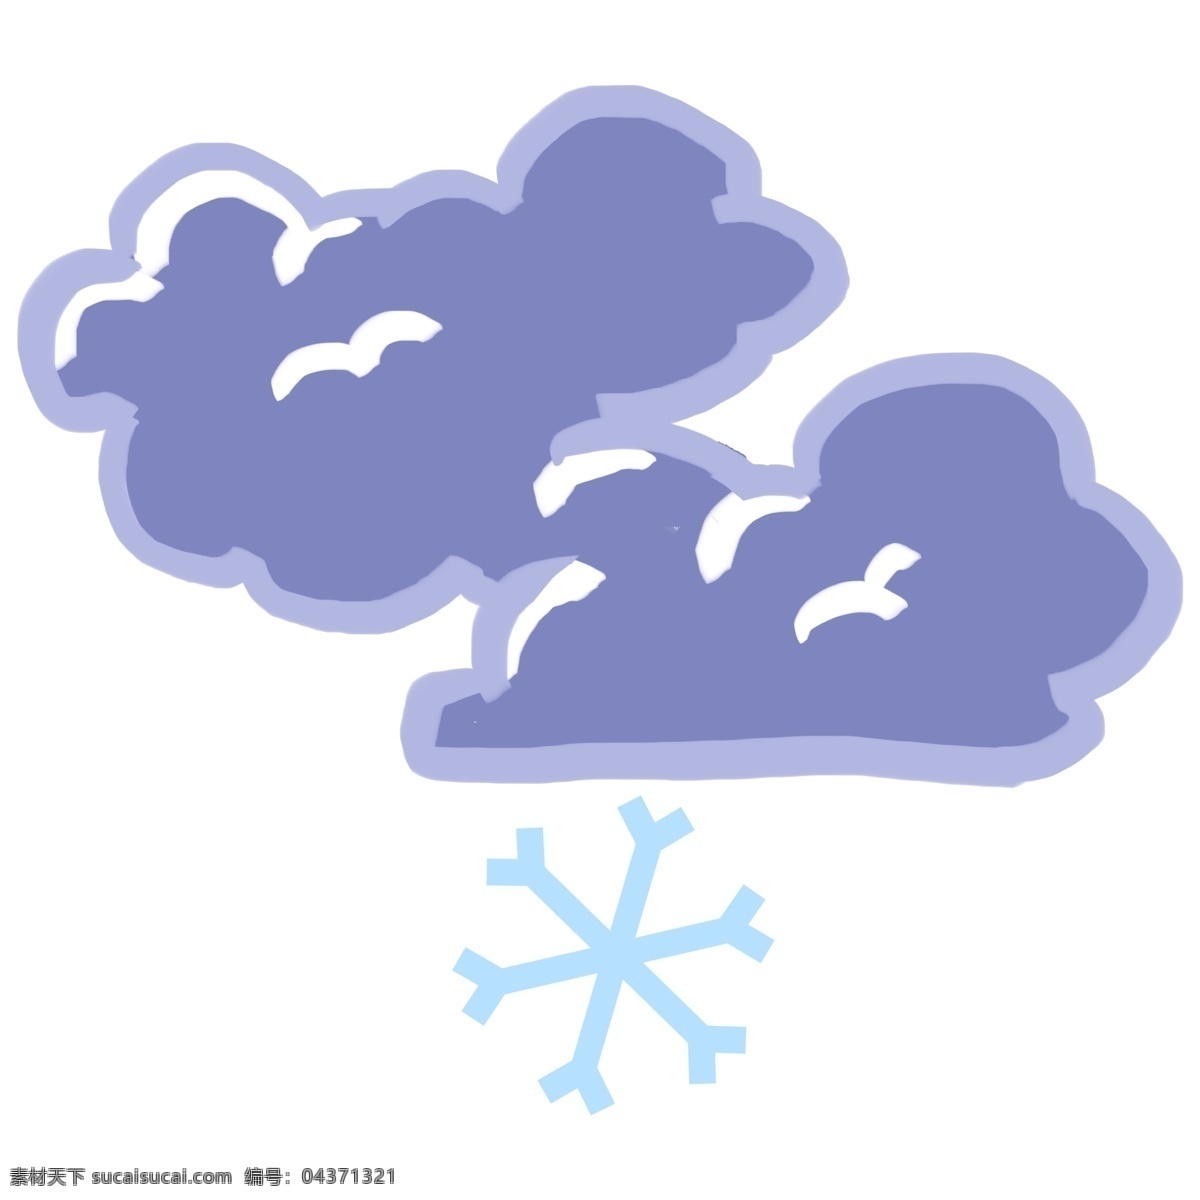 小雪 天气 图标 插画 小雪的天气 卡通插画 天气图标 天气插画 气象 下雪 雪天的天气 雪花 雪